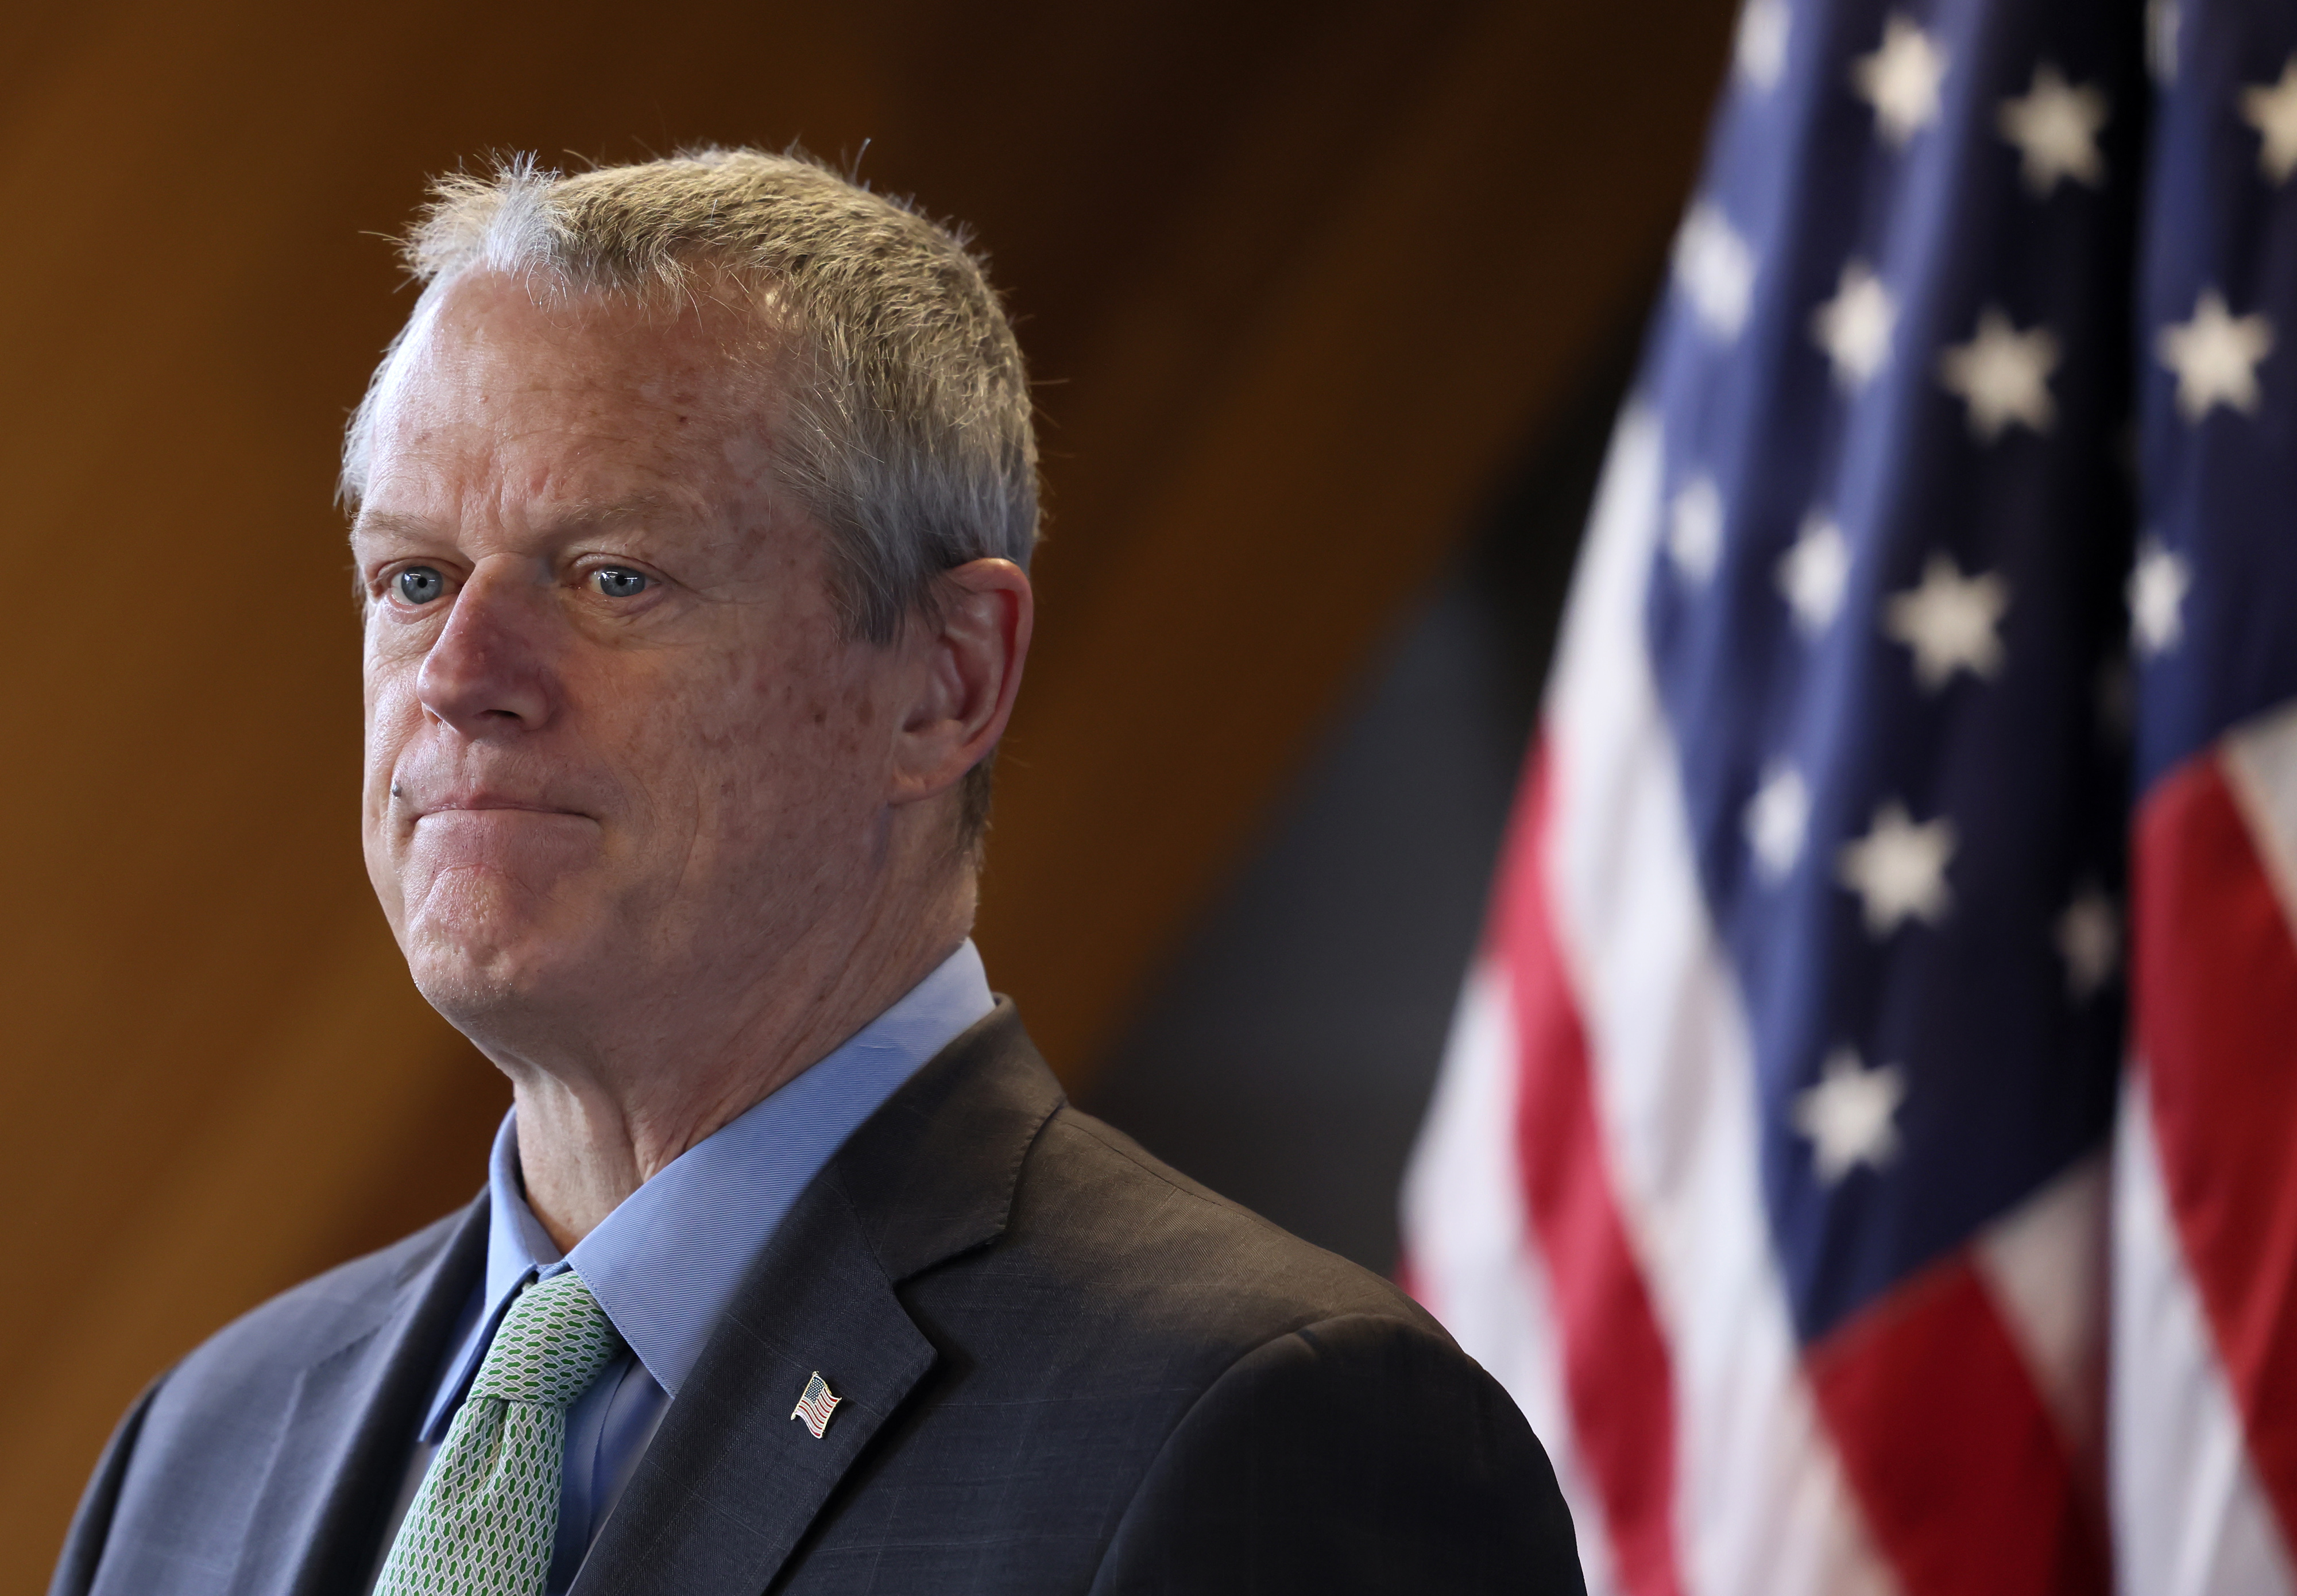 MA Senate GOP Leader Will Press For 'Driver Privilege Cards' for Immigrants  – NBC Boston